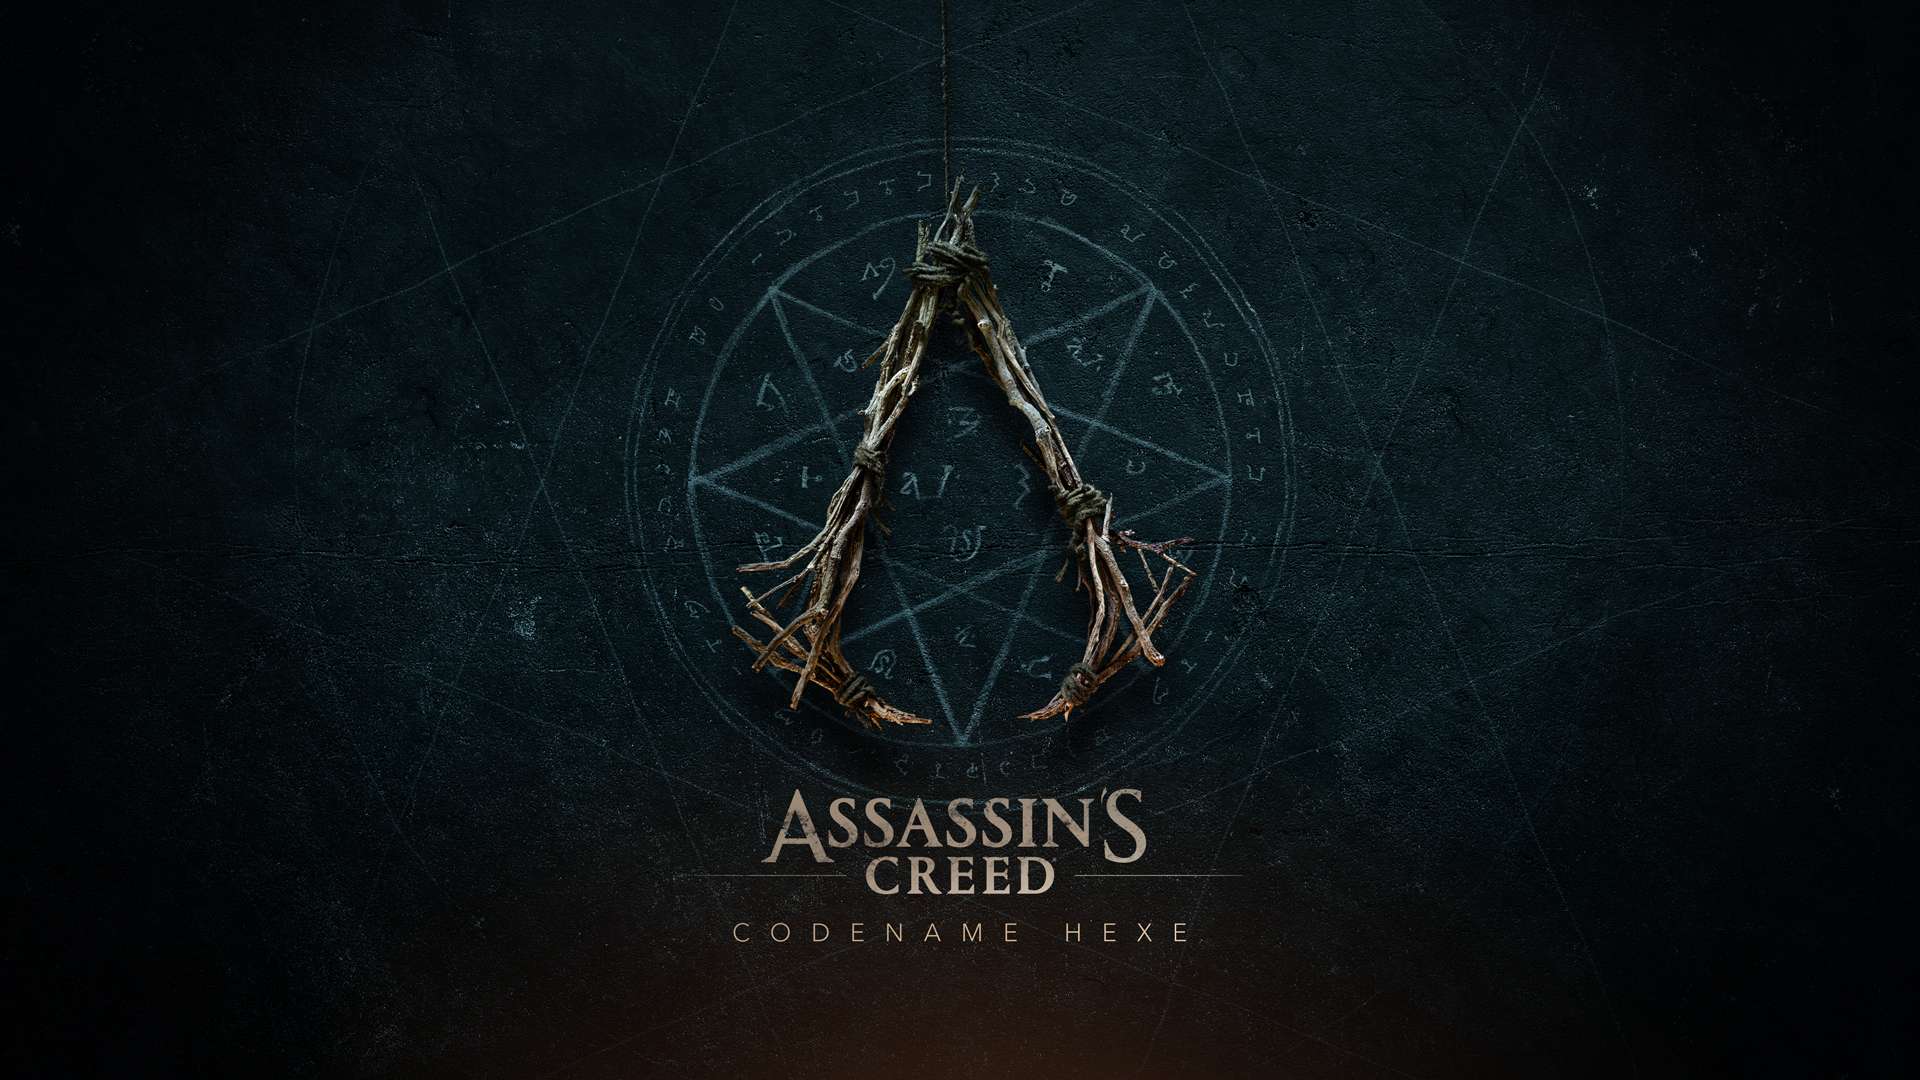 Captura de pantalla del nombre en clave de Assassin's Creed Hexe